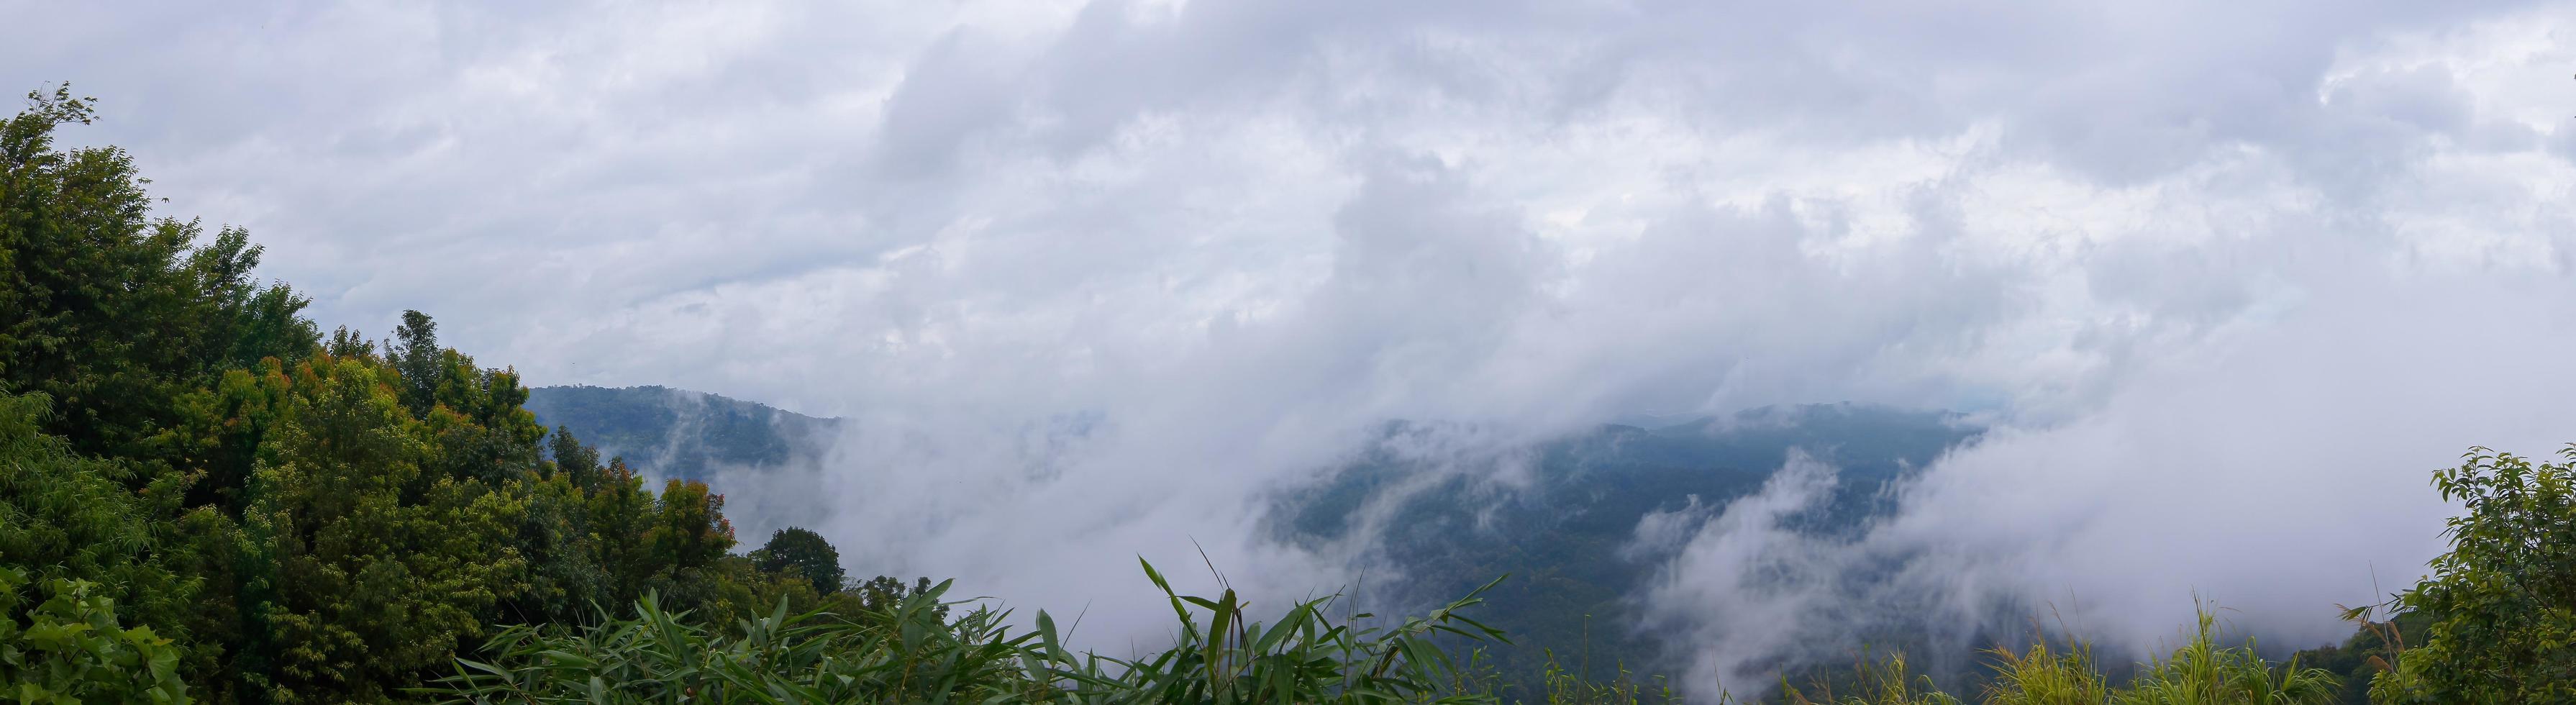 panorama, mist op de berg achter het groene bos foto